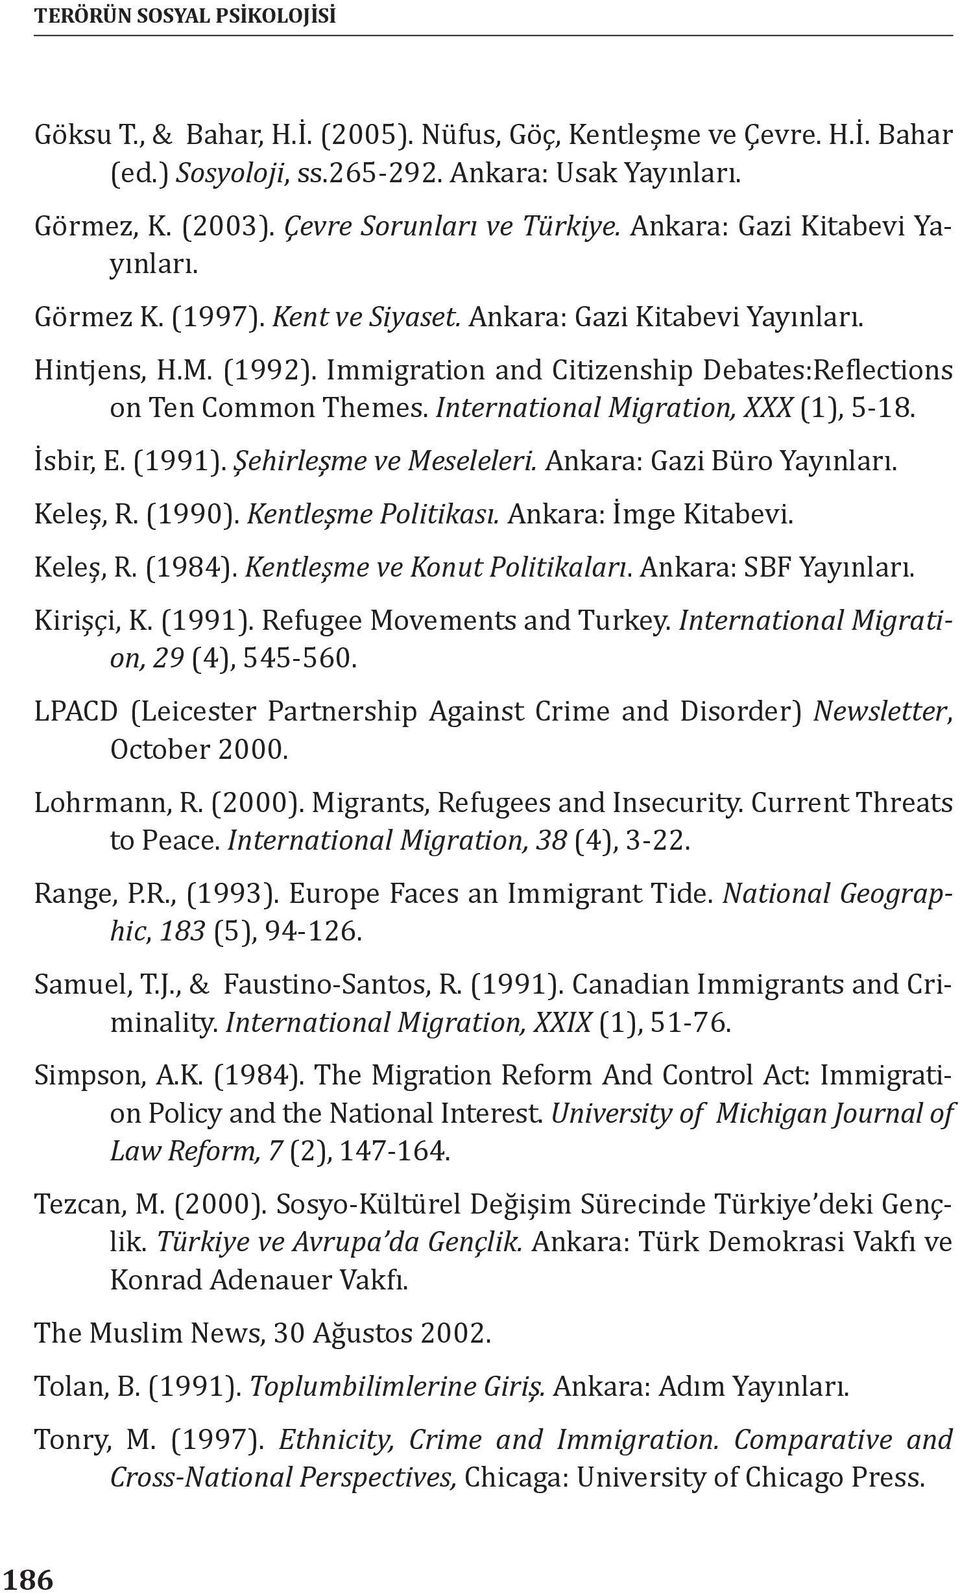 Immigration and Citizenship Debates:Reflections on Ten Common Themes. International Migration, XXX (1), 5-18. İsbir, E. (1991). Şehirleşme ve Meseleleri. Ankara: Gazi Büro Yayınları. Keleş, R. (1990).